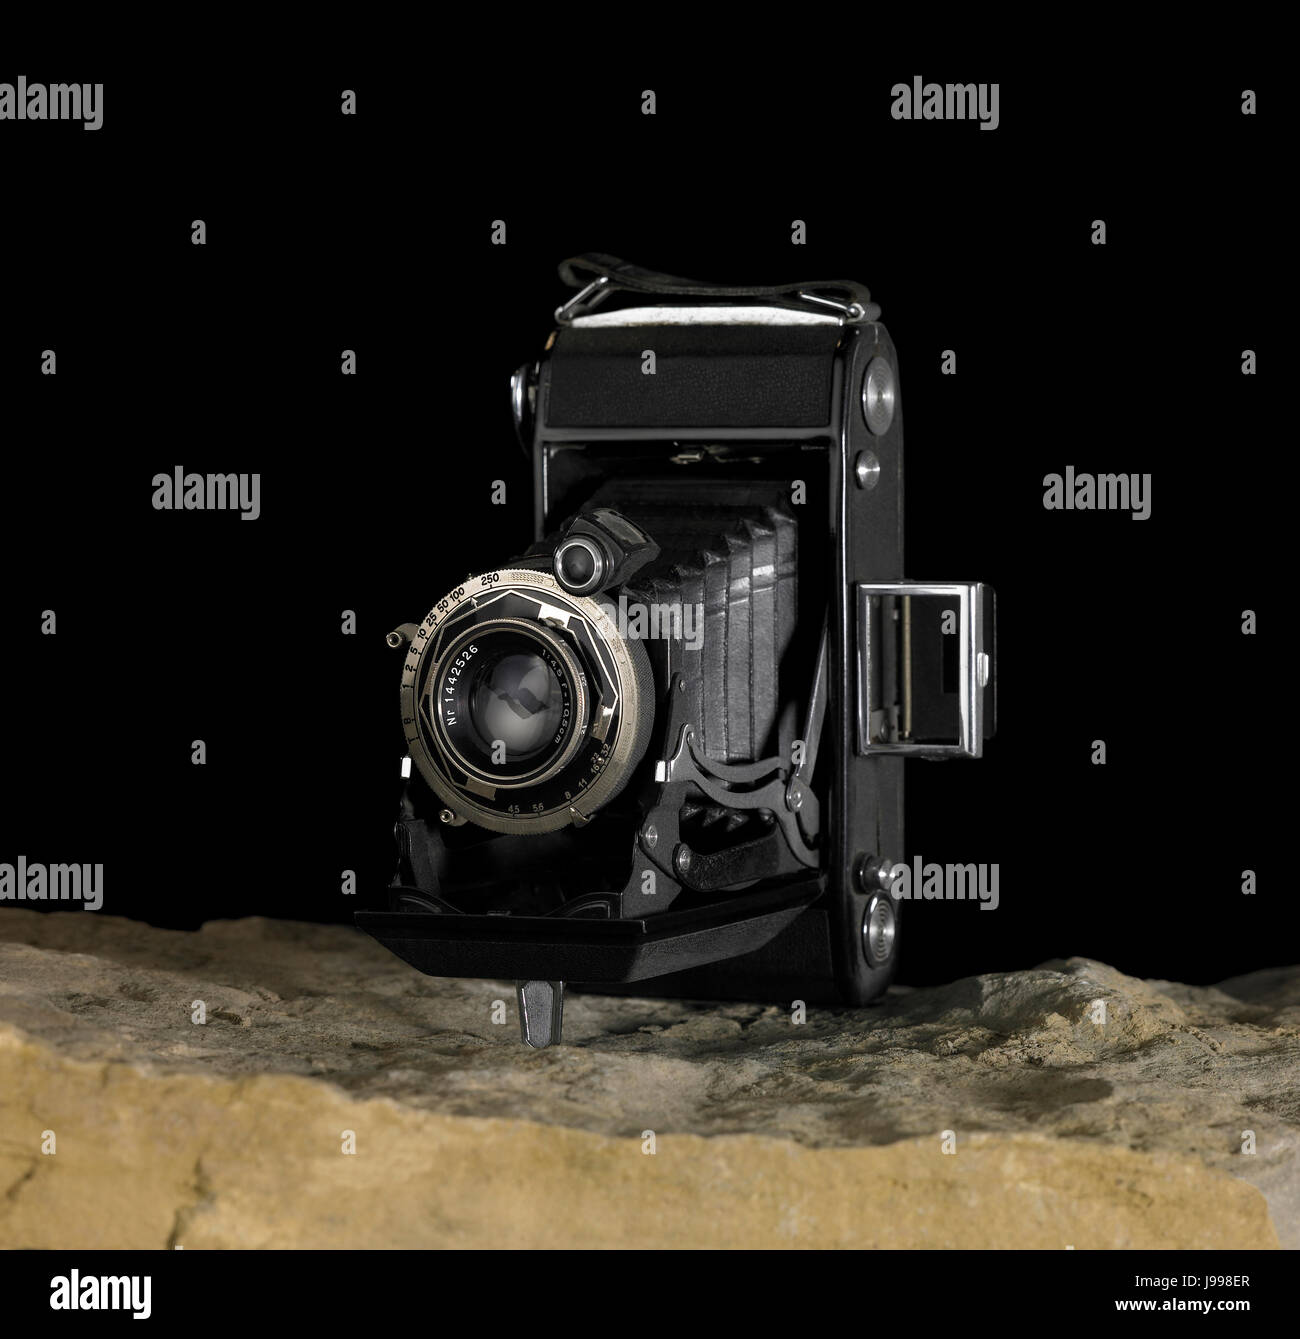 nostalgic camera on stone surface Stock Photo